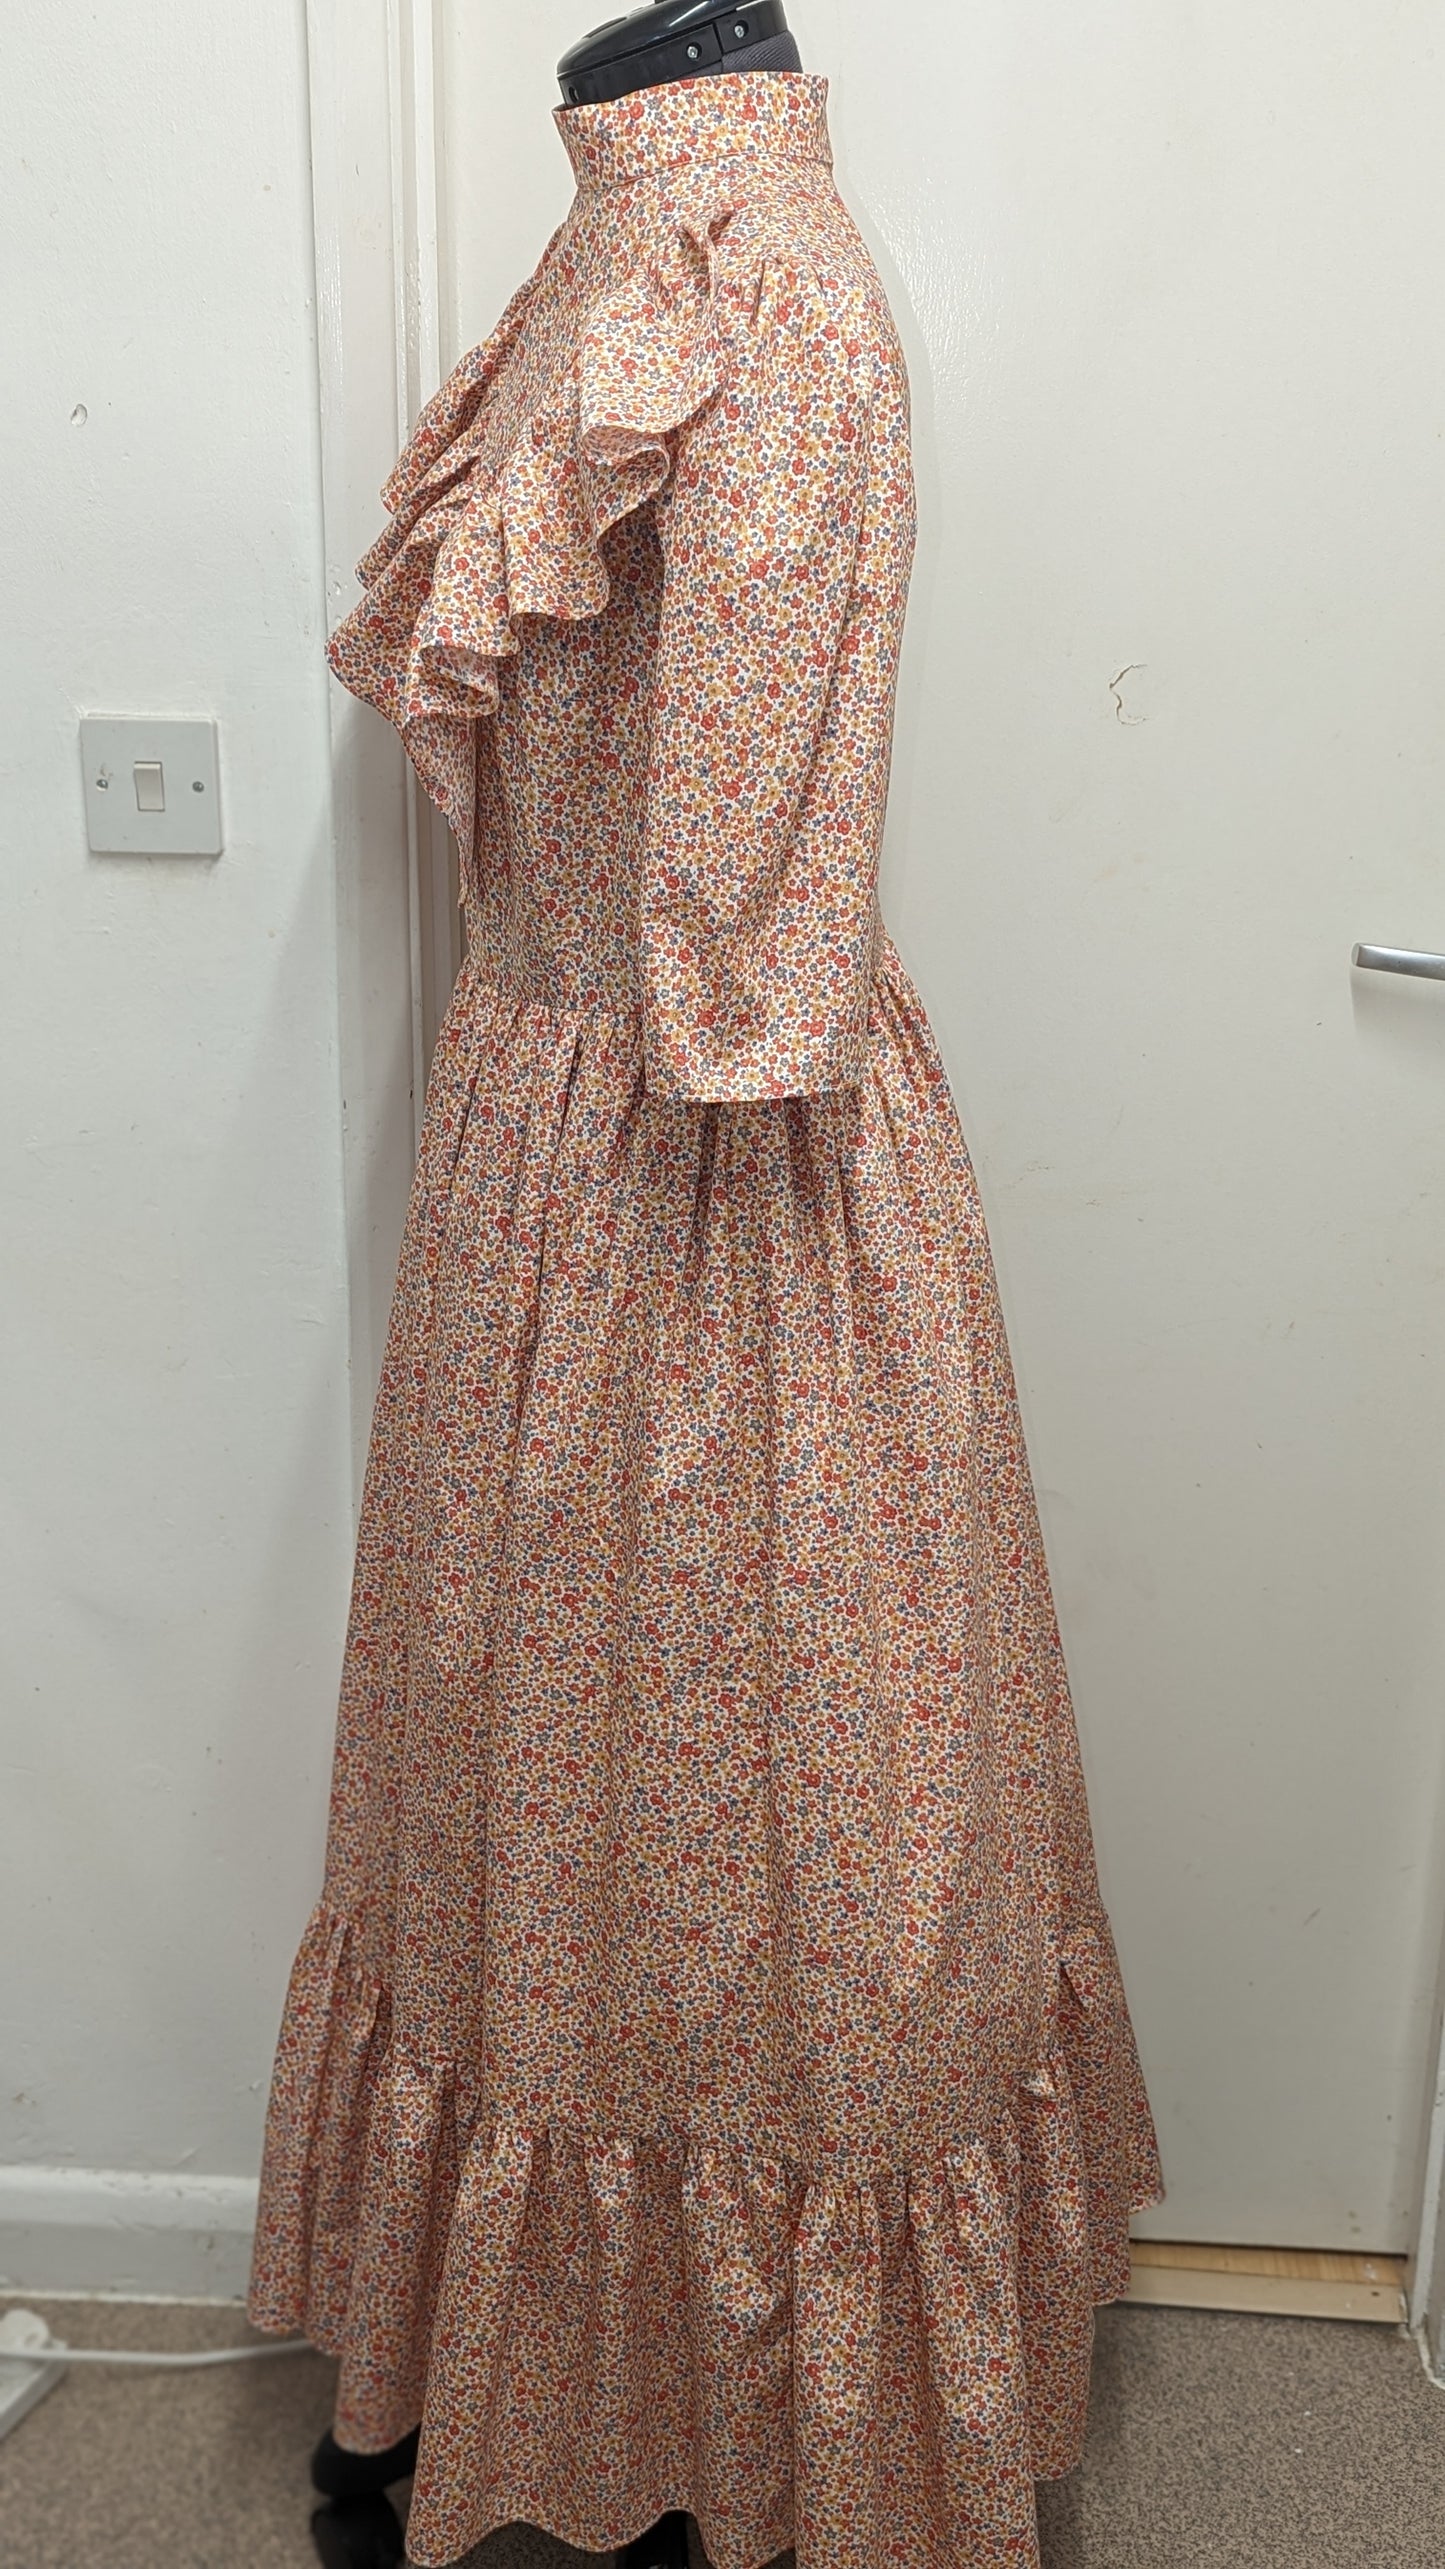 Emmeline, Victorian Vintage dress in pink flowers